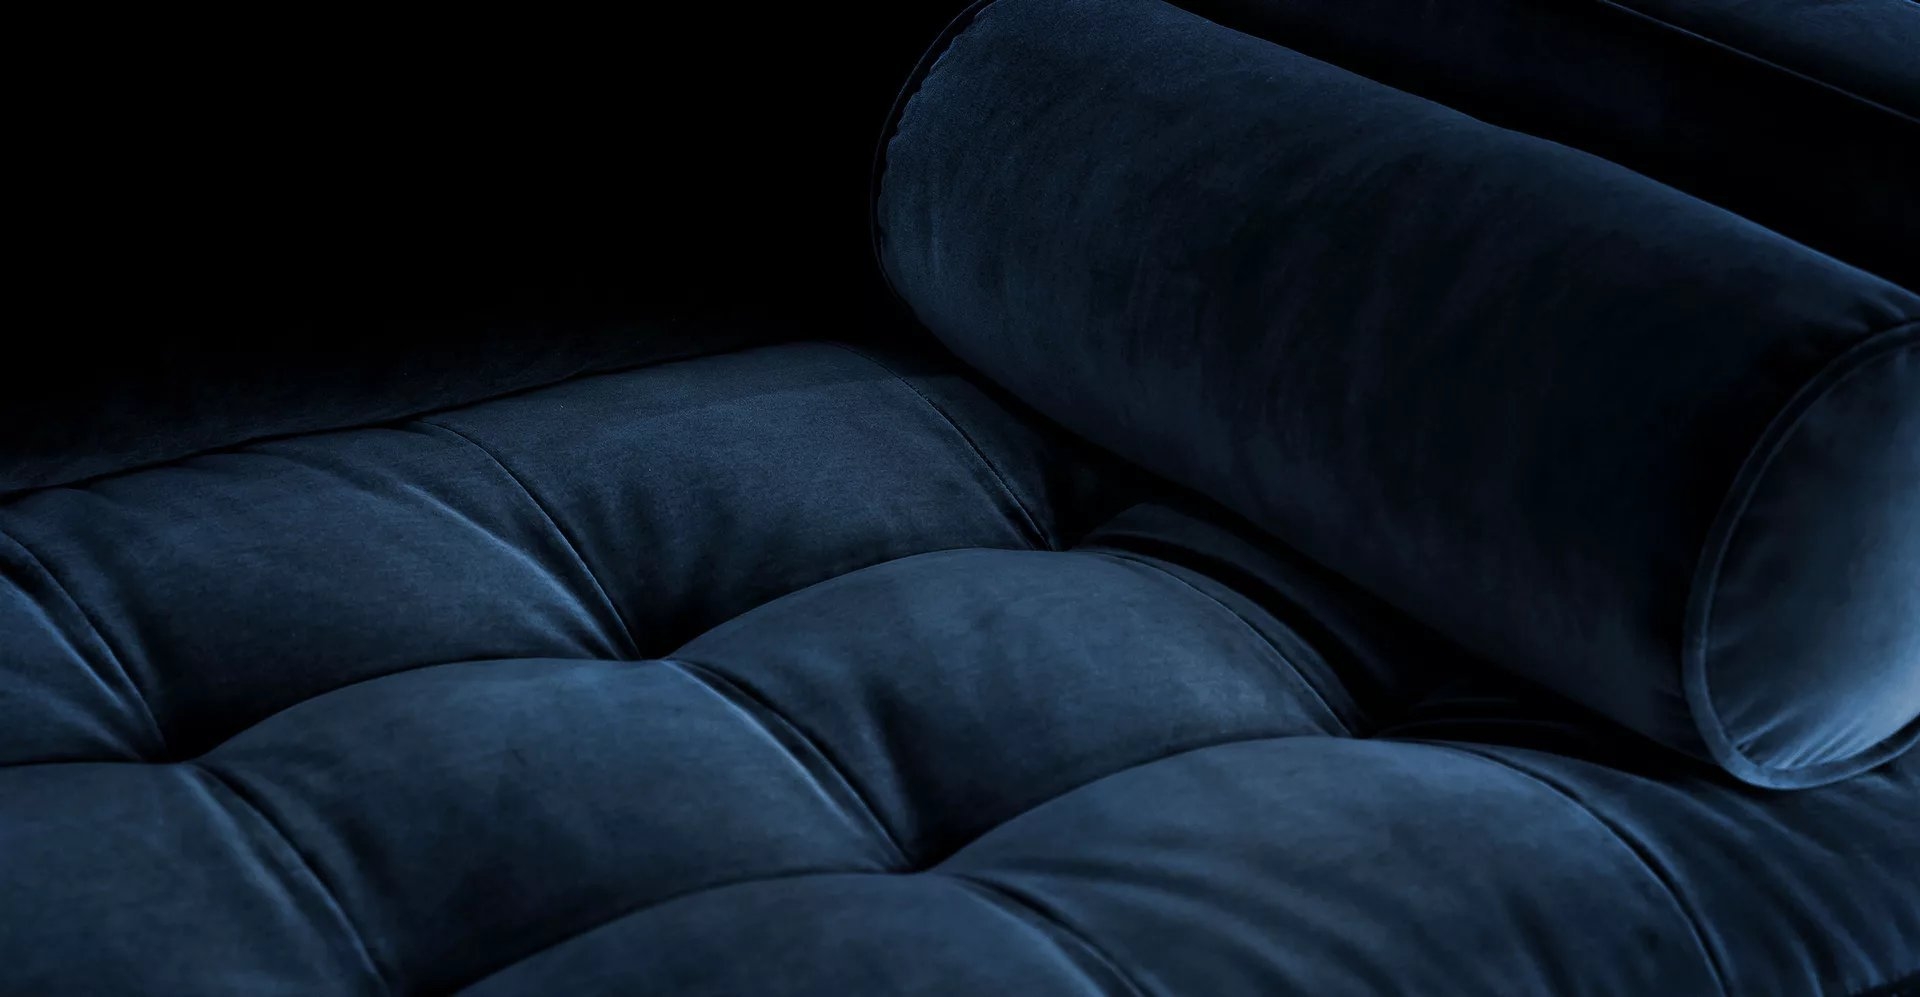 Sven 88" Tufted Velvet Sofa - Cascadia Blue - Image 3